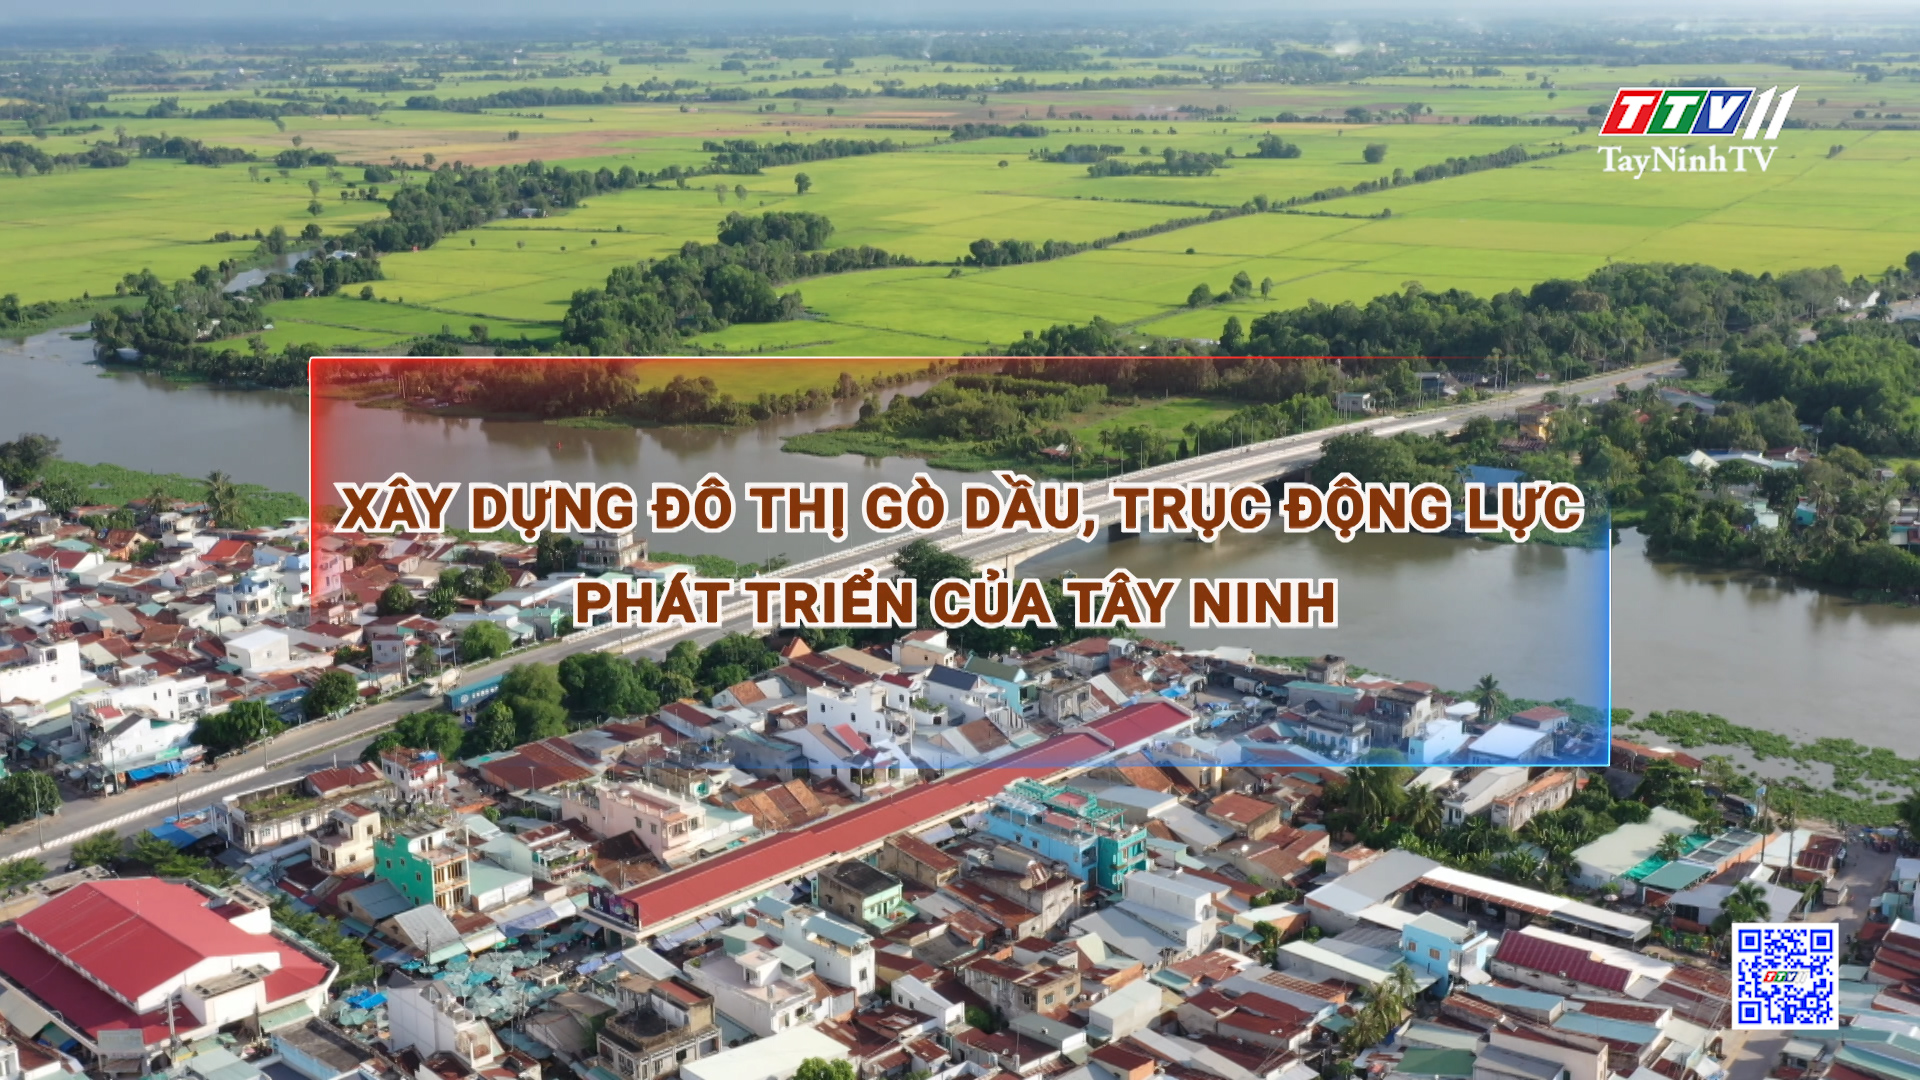 Xây dựng đô thị Gò Dầu, trục động lực phát triển của Tây Ninh | Những vấn đề hôm nay | TayNinhTV